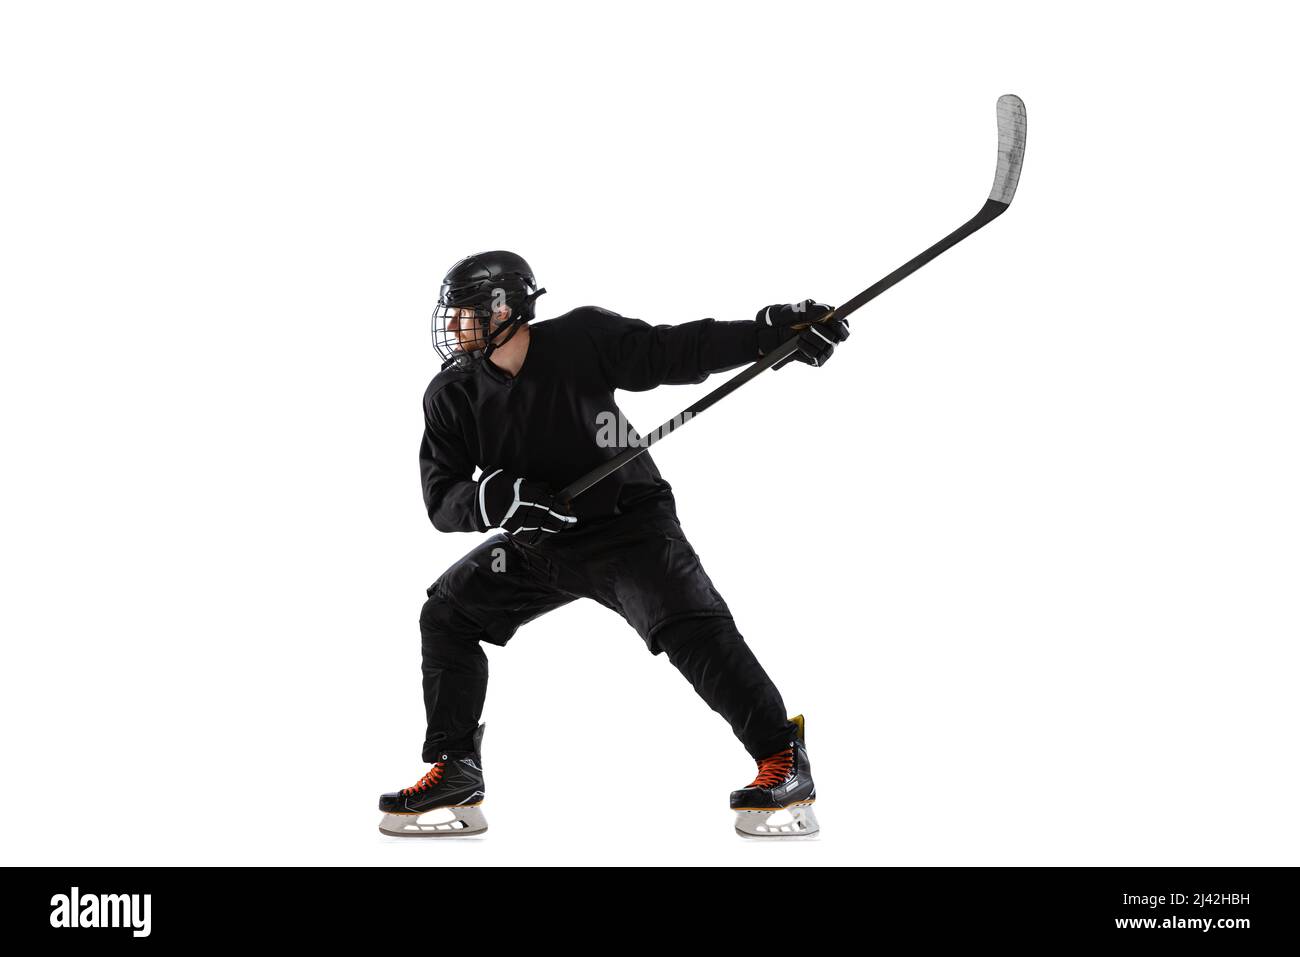 Eishockey-Spieler Skelett - 3D-Darstellung der männlichen menschlichen Skelett  Figur mit Hockey-Stick trägt Helm und Pads isoliert auf weißem Studio  Rücken Stockfotografie - Alamy